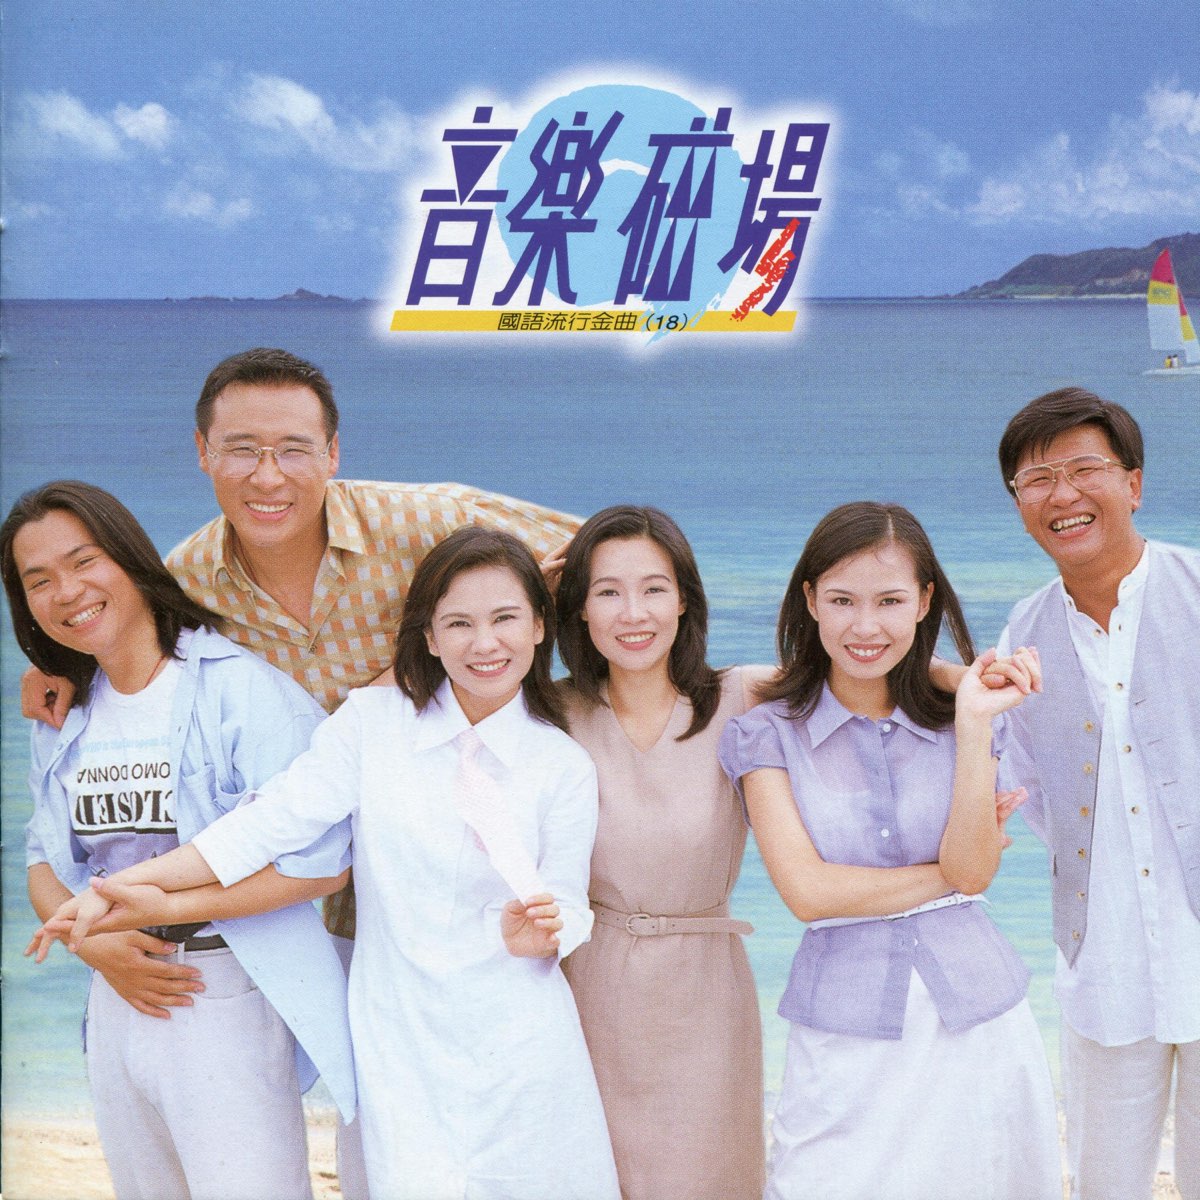 中国台湾音乐组合《音乐磁场》1991-2004年发行专辑23张23CD合集[无损WAV/9.08GB]百度云盘打包下载 影音资源 第3张